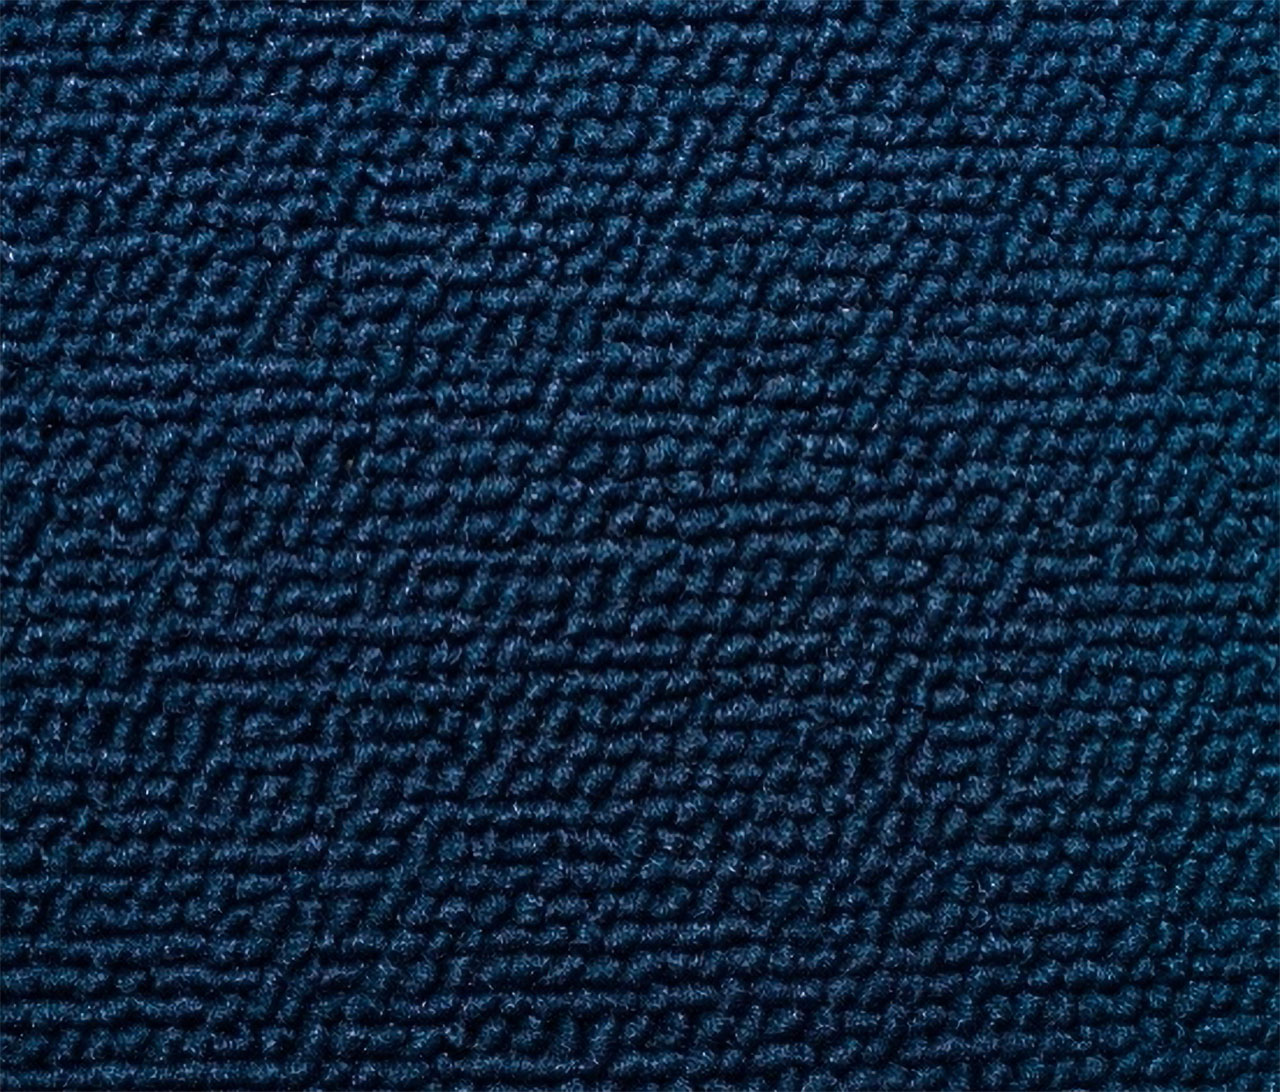 Holden Standard HD Standard Sedan D39 Calais Blue Carpet (Image 1 of 1)